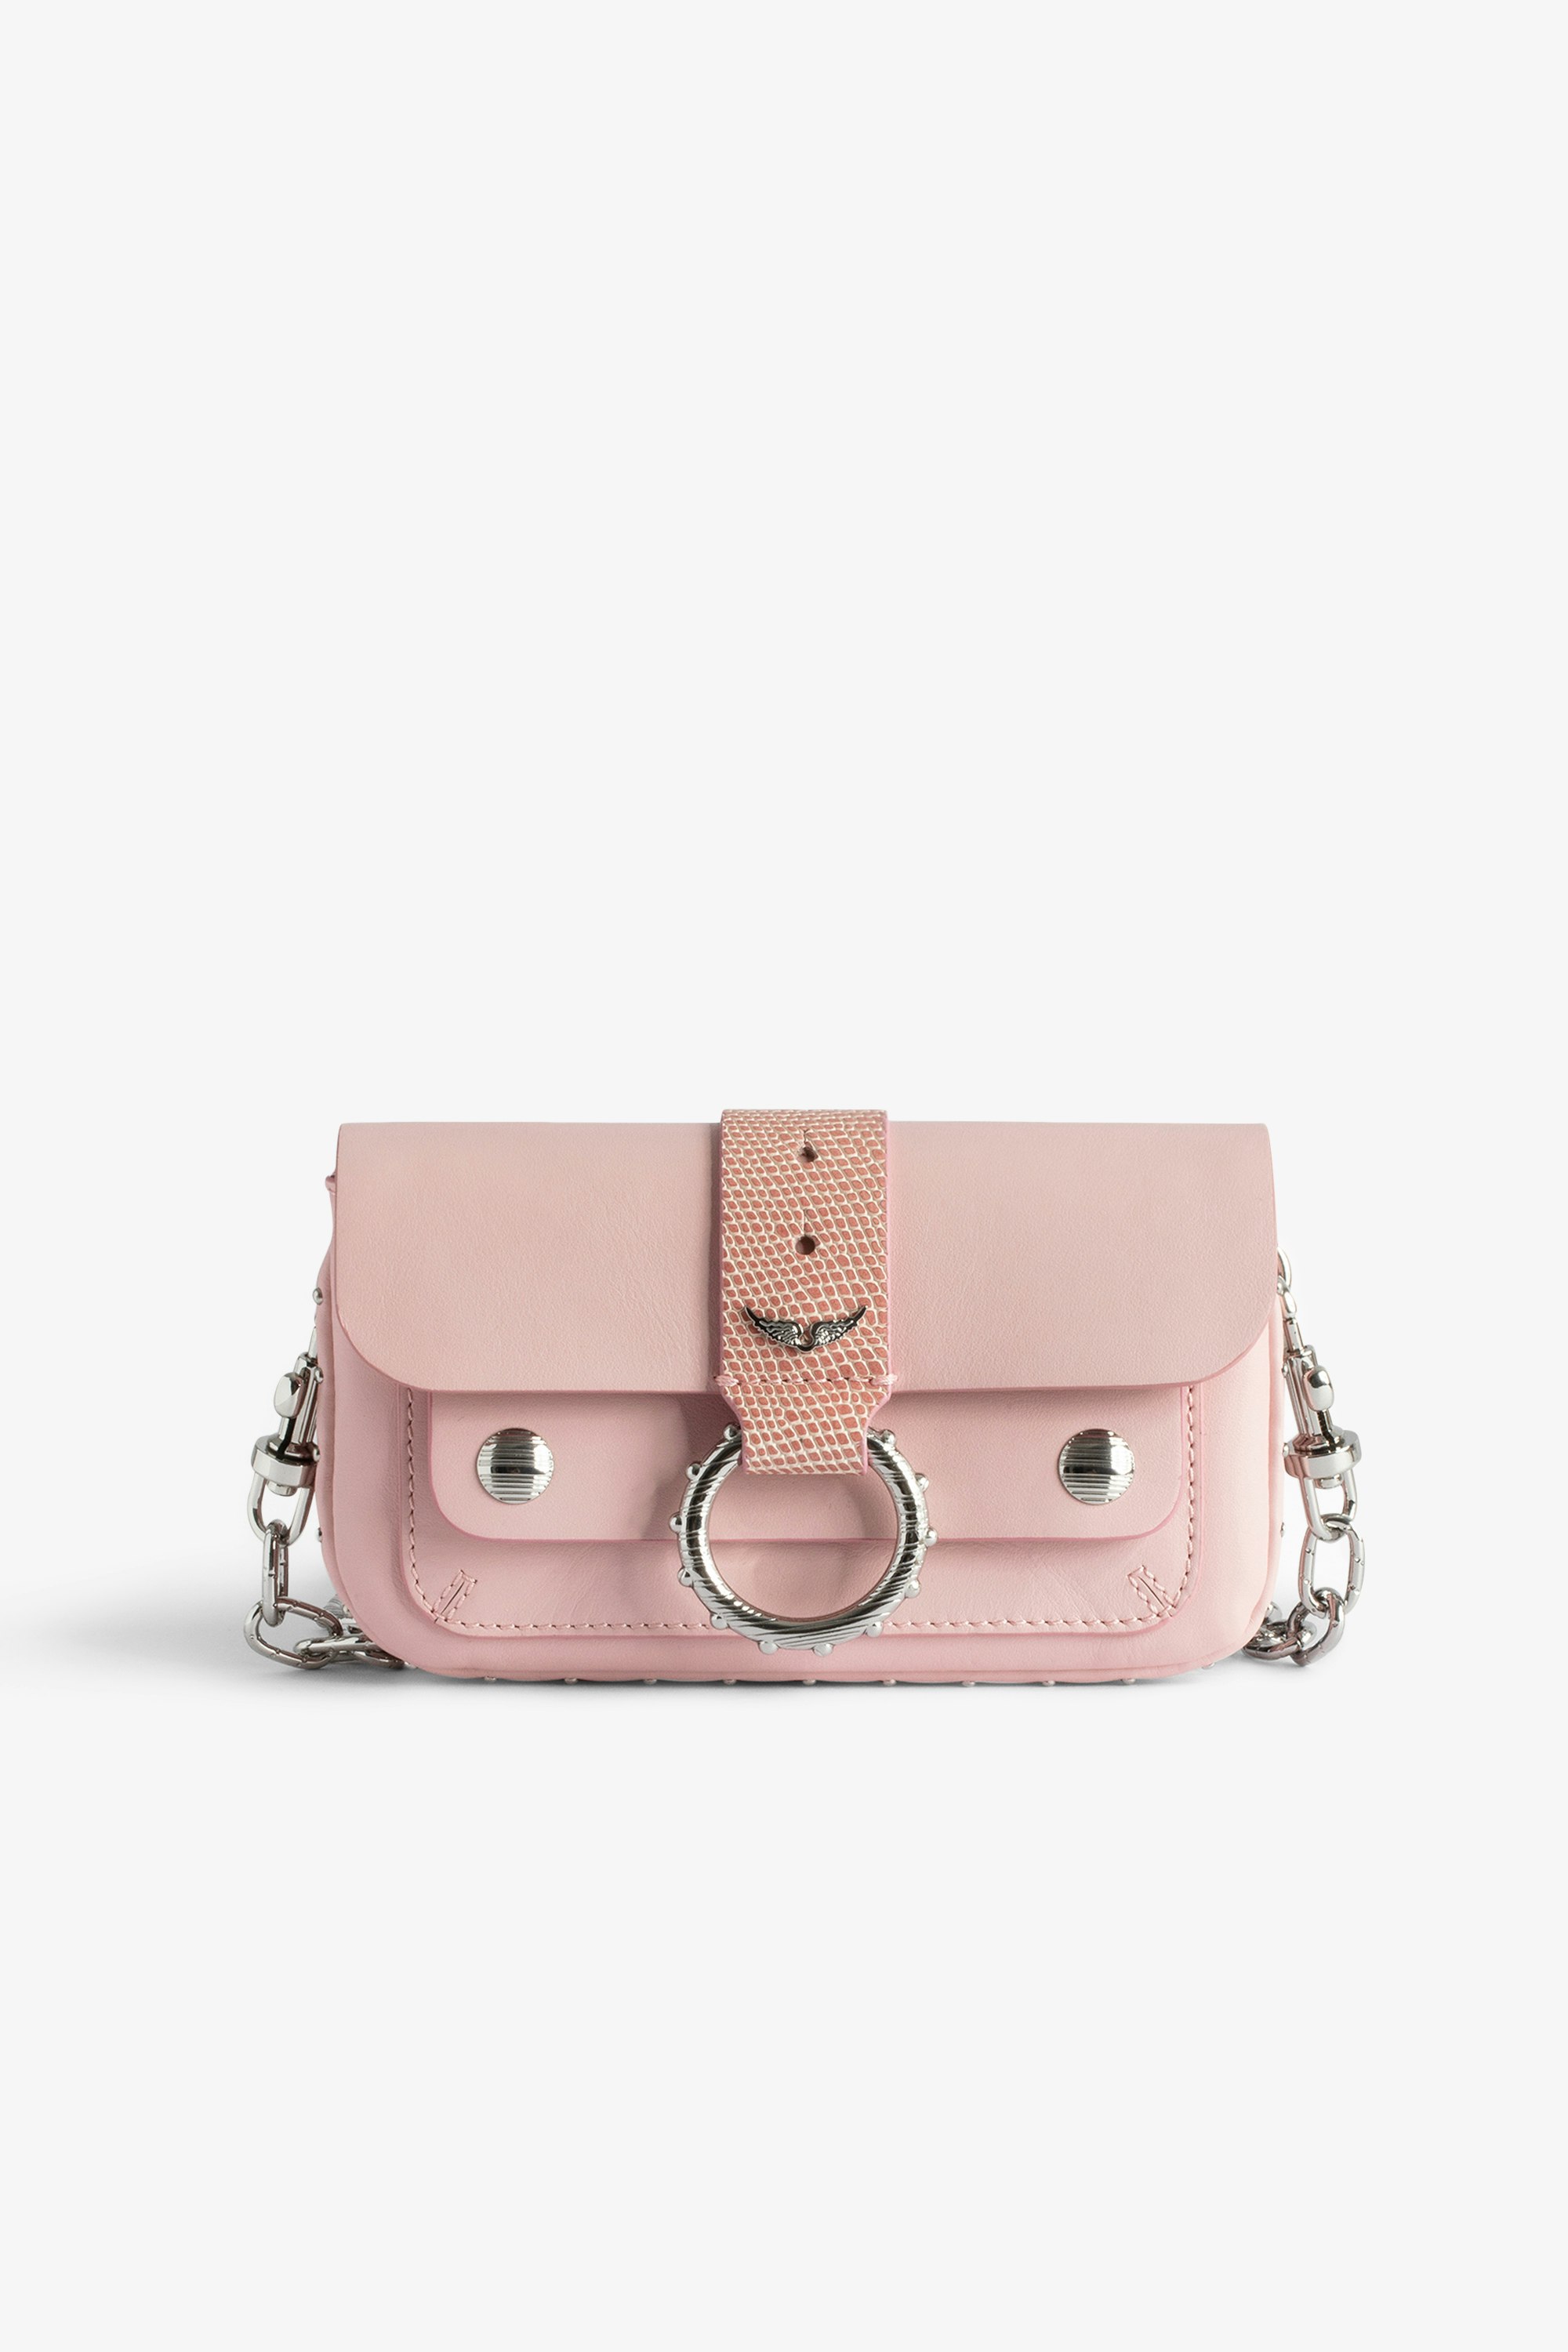 Borsa Kate Wallet Mini borsa in pelle liscia rosa con catena in metallo e passante in pelle goffrata effetto iguana da donna.